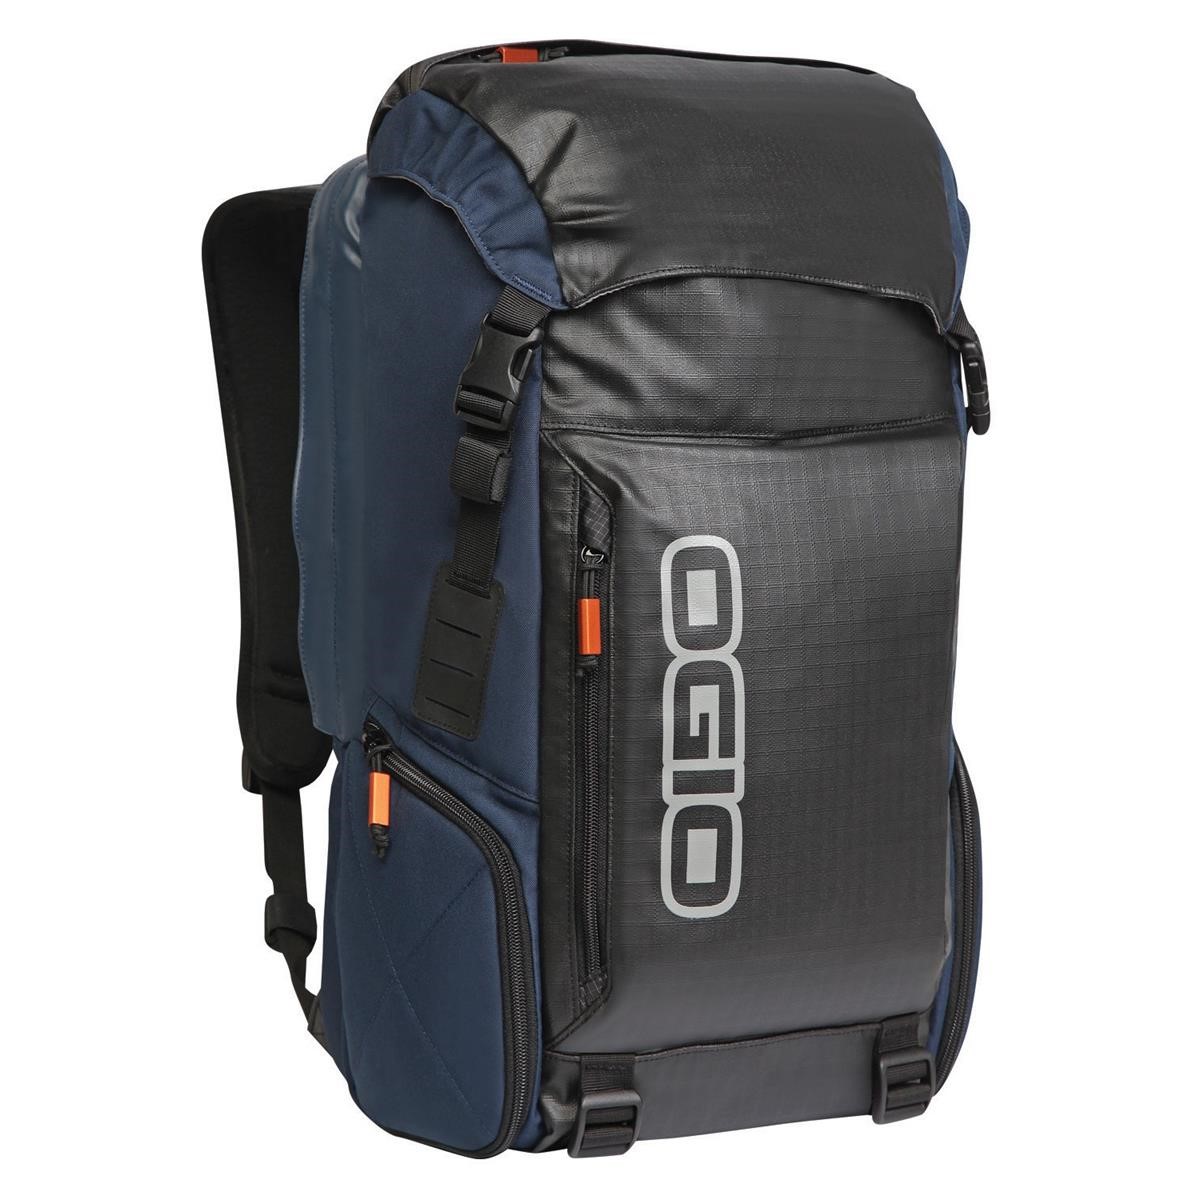 Ogio Backpack Throttle Blue, 27 Liter